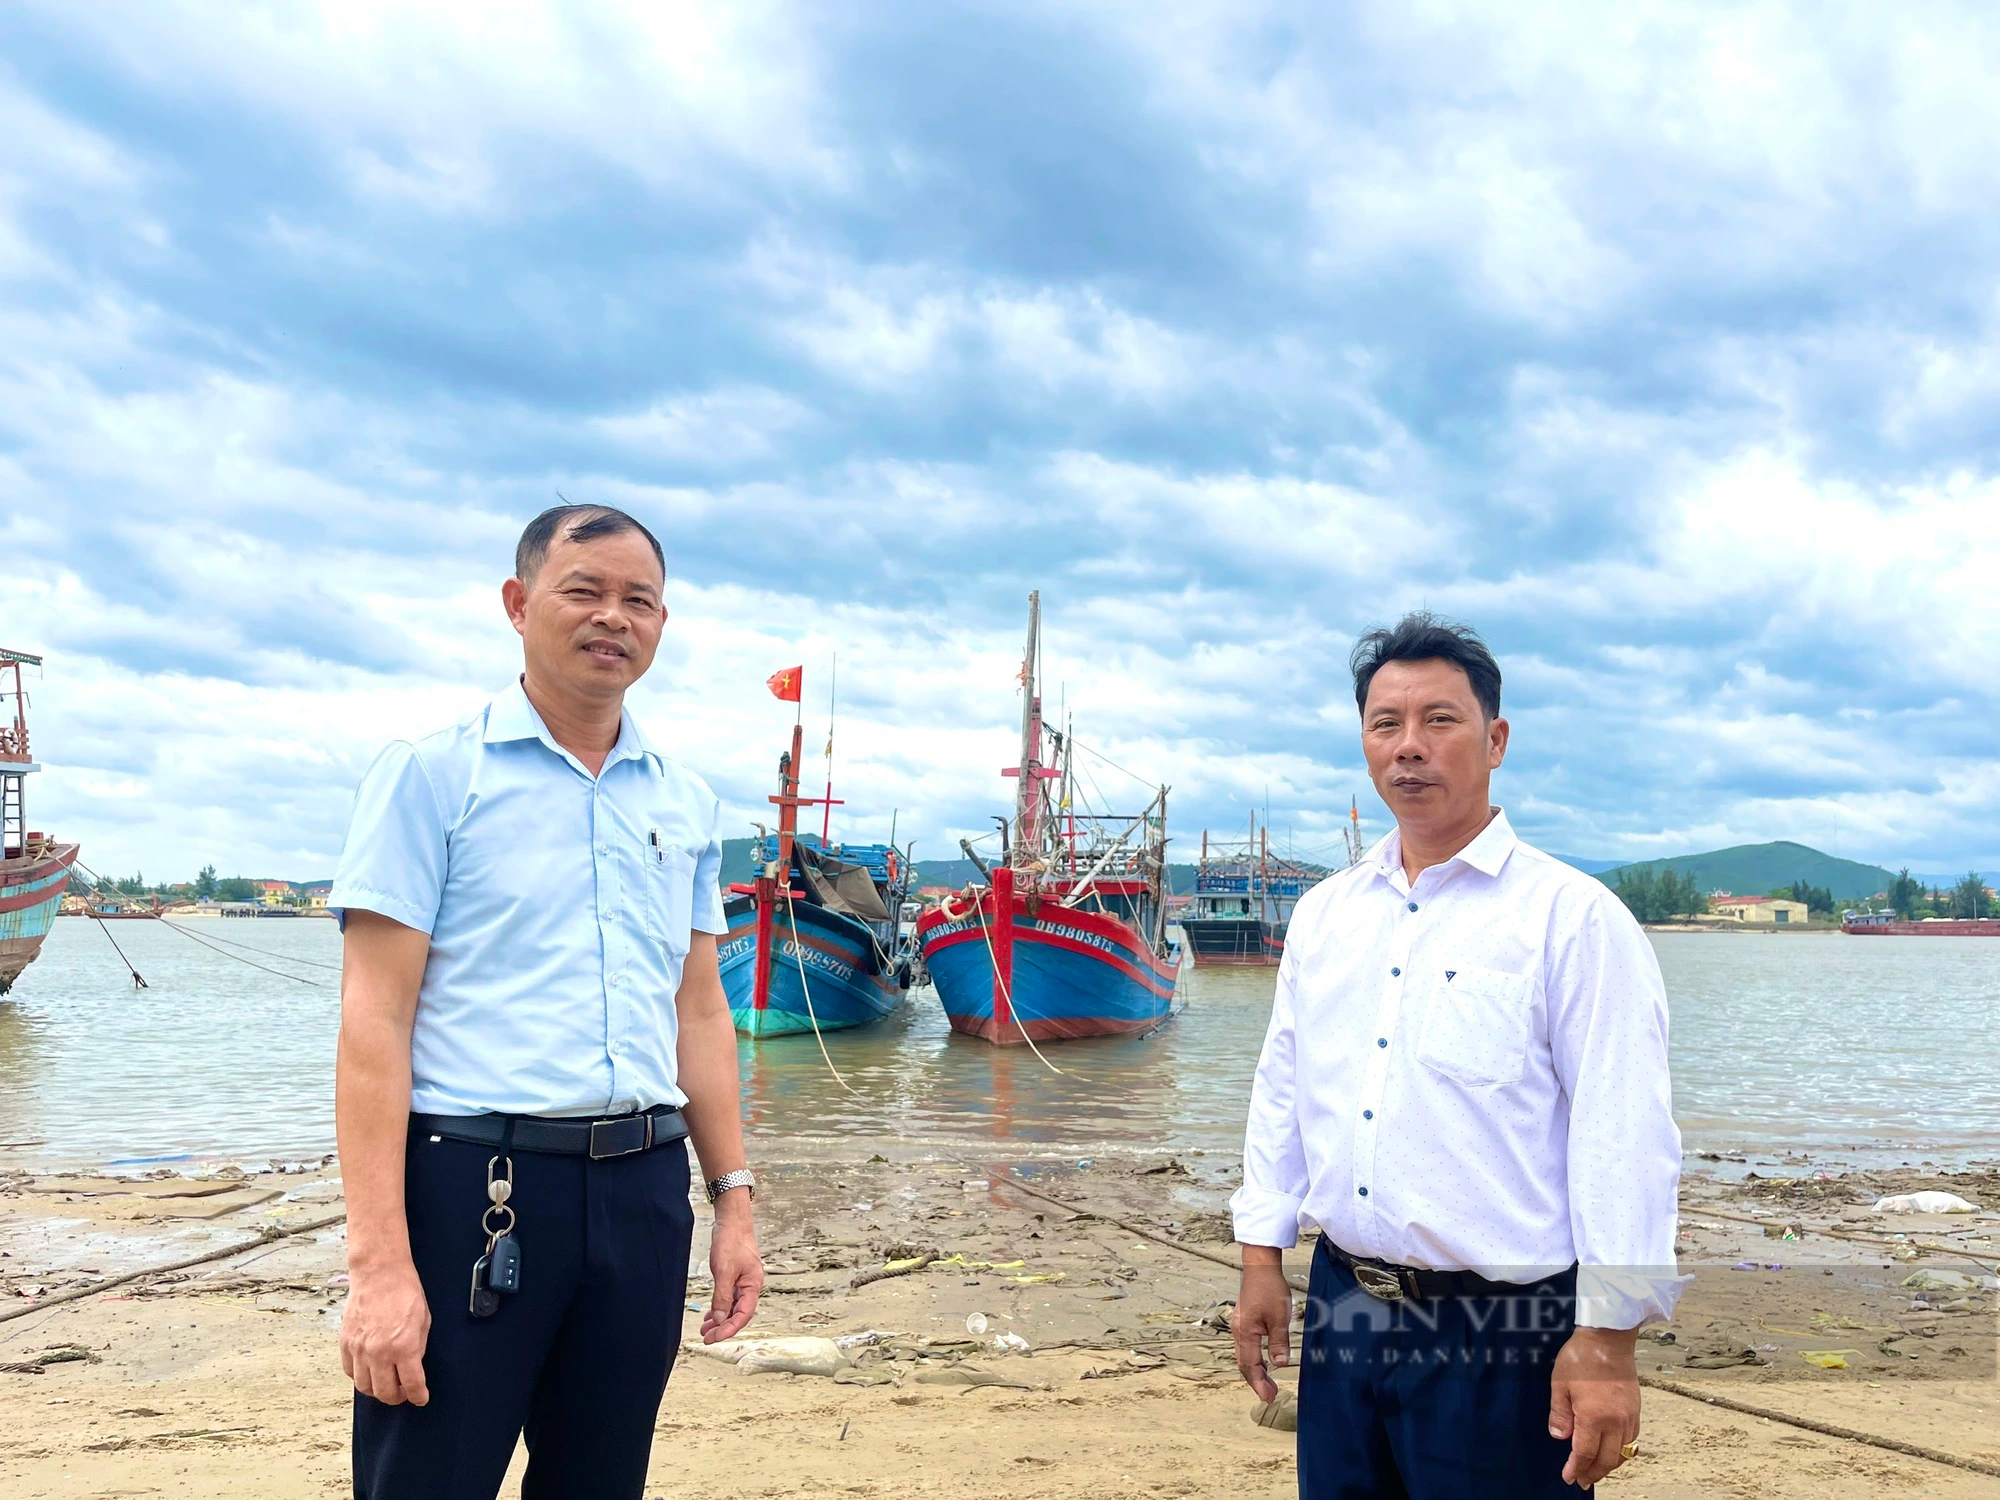 Đại hội VIII Hội NDVN: Ngư dân Quảng Bình mong mở nhiều lớp tập huấn nâng cao kiến thức, kỹ năng để vươn khơi - Ảnh 5.